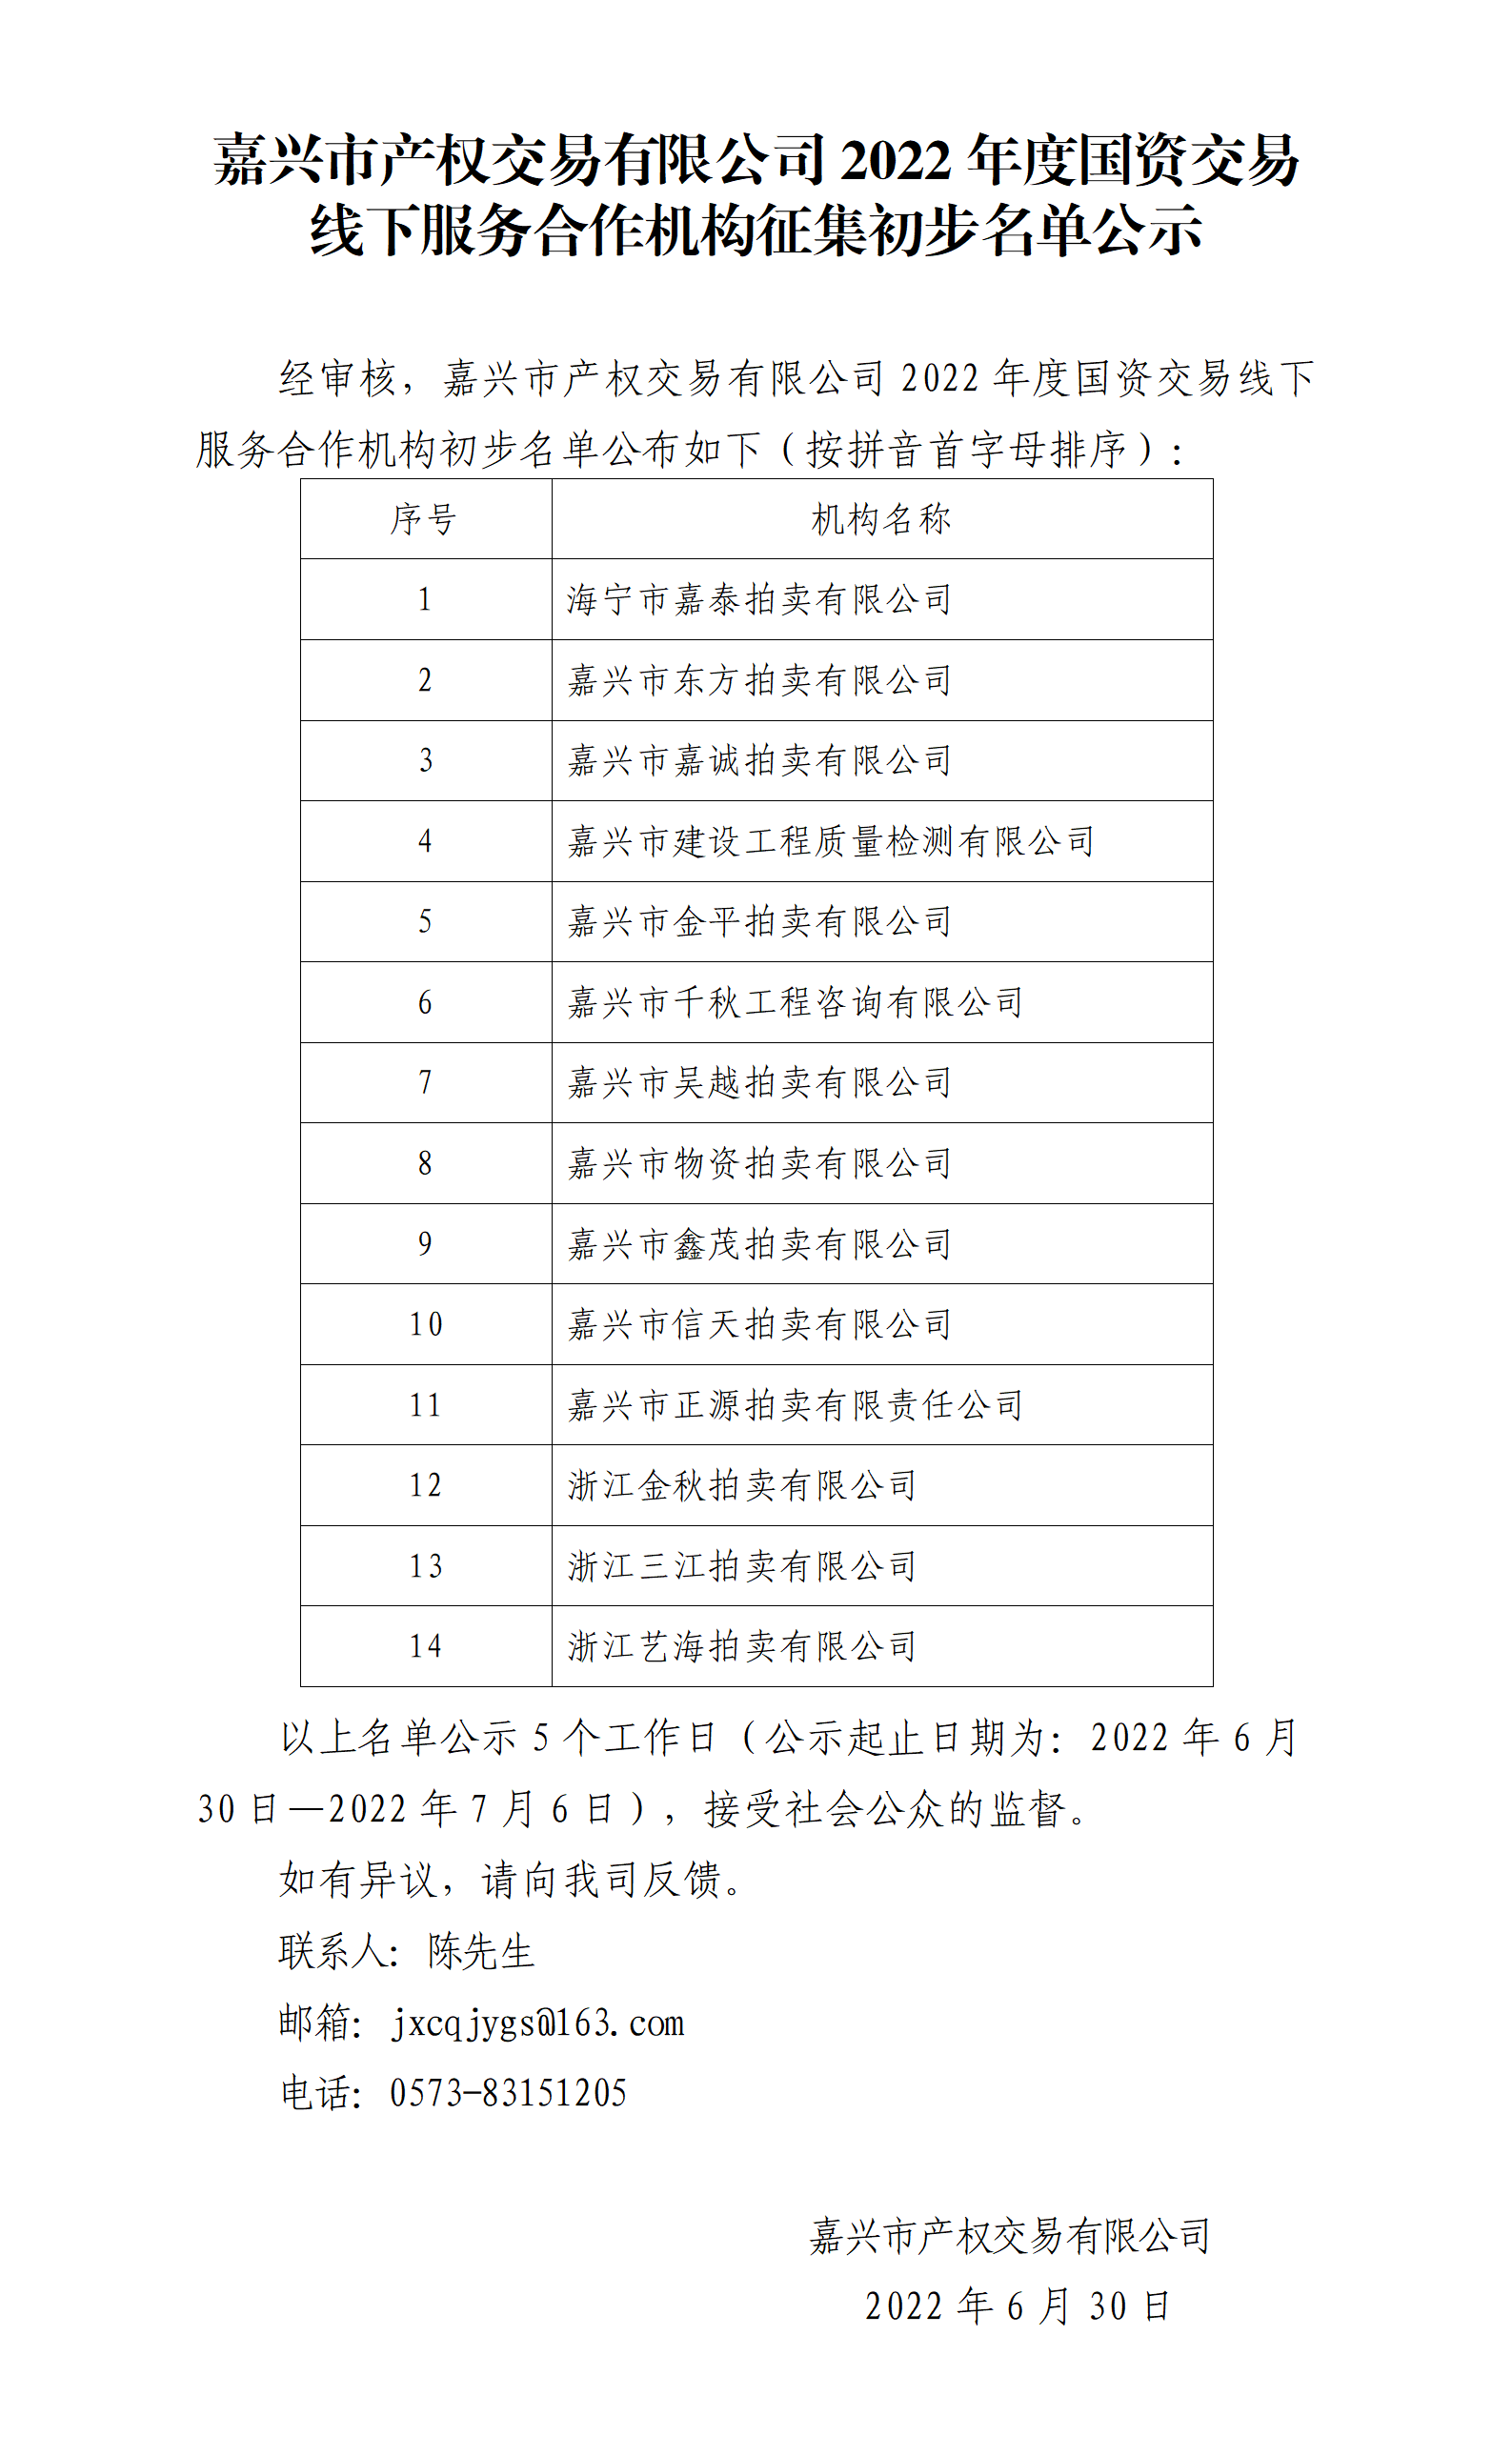 嘉兴市产权交易有限公司2022年度国资交易线下服务合作机构征集初步名单公示（图片）.png